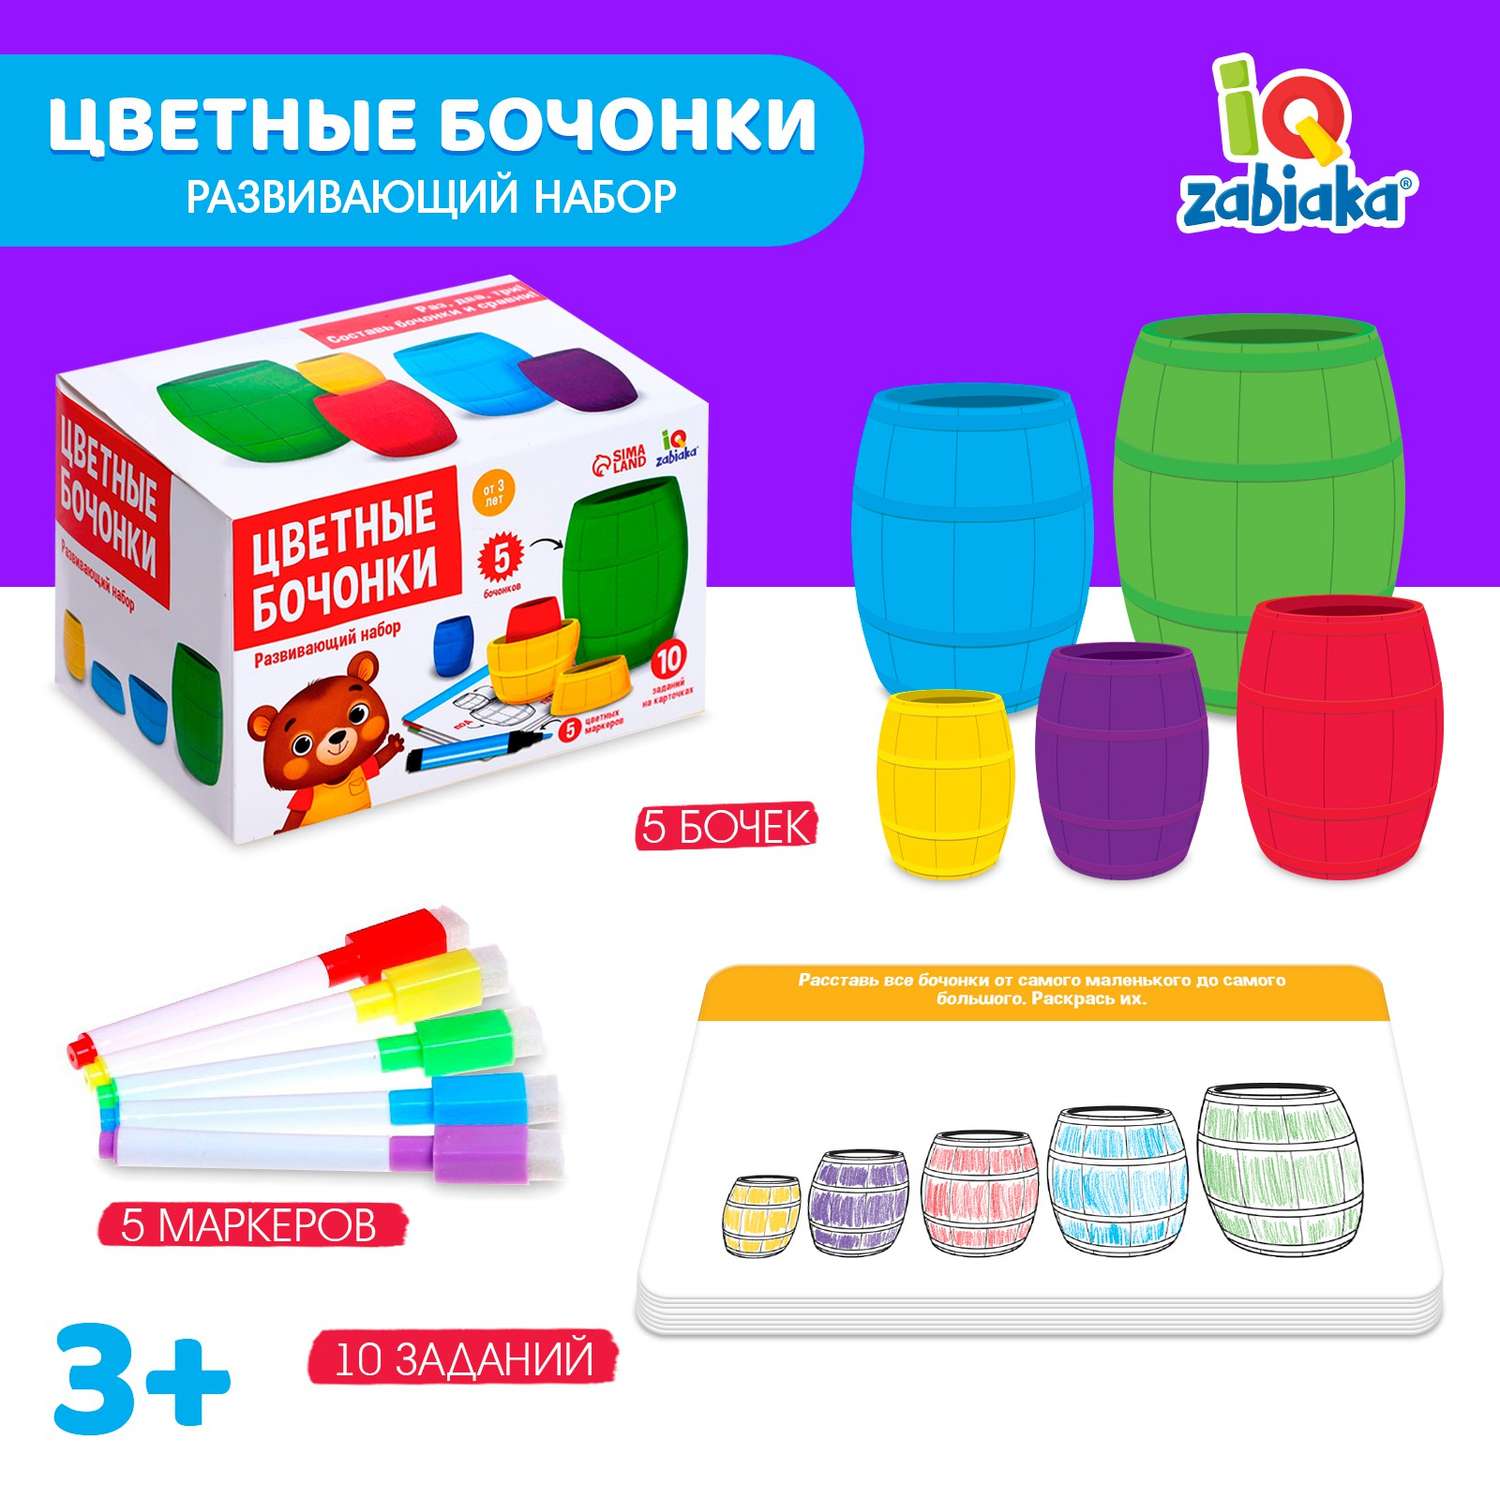 Развивающий набор IQ-ZABIAKA «Цветные бочонки» по типу матрёшки маркеров карточки пиши-стирай - фото 1